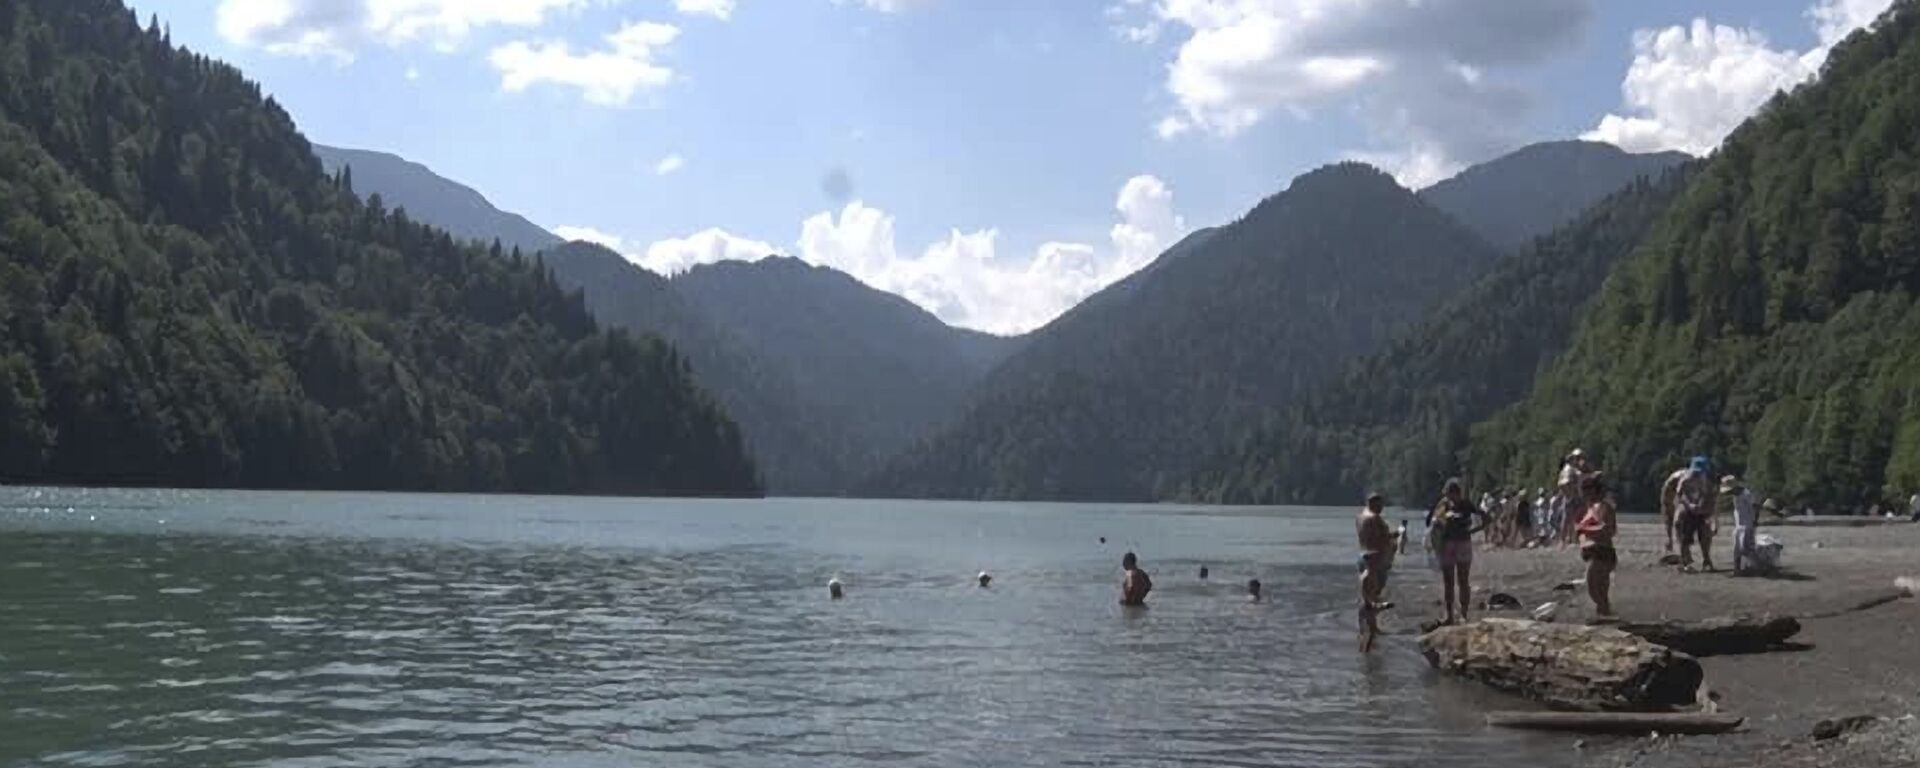 Туристы купаются в озере Рица  - Sputnik Аҧсны, 1920, 09.08.2021